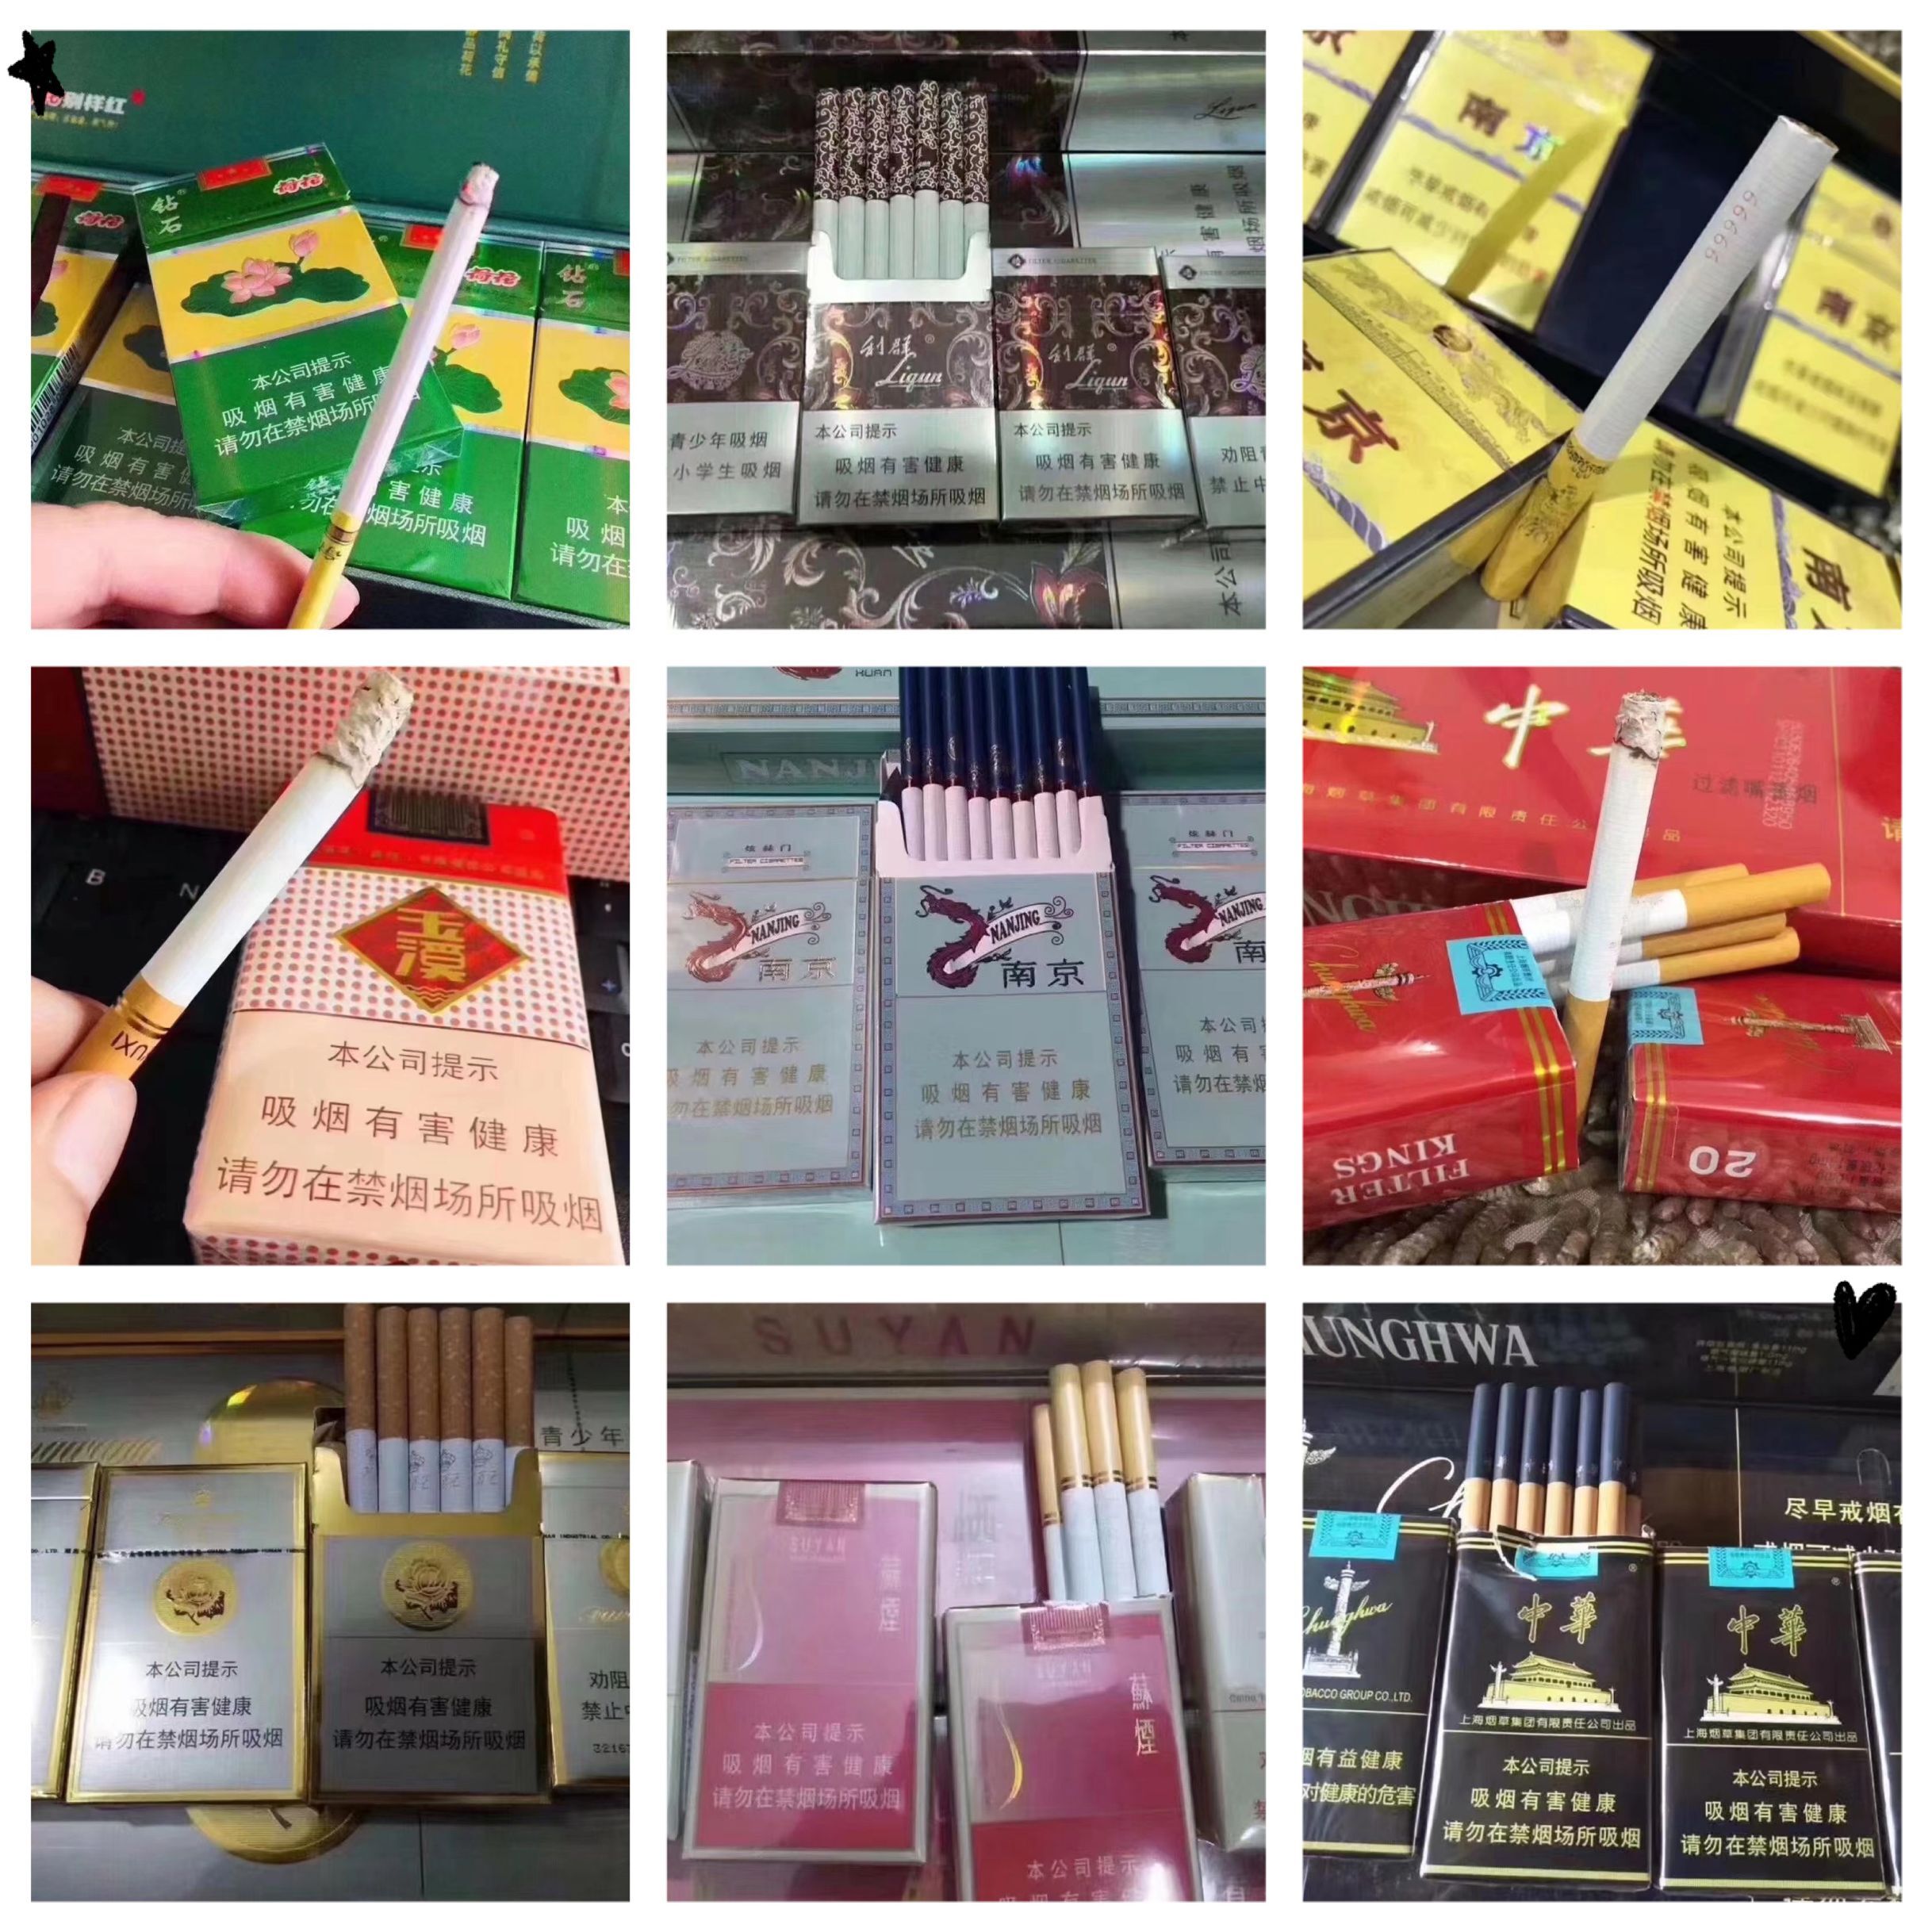 越南代工的烟_越南代工香烟质量到底如何_越南代工烟